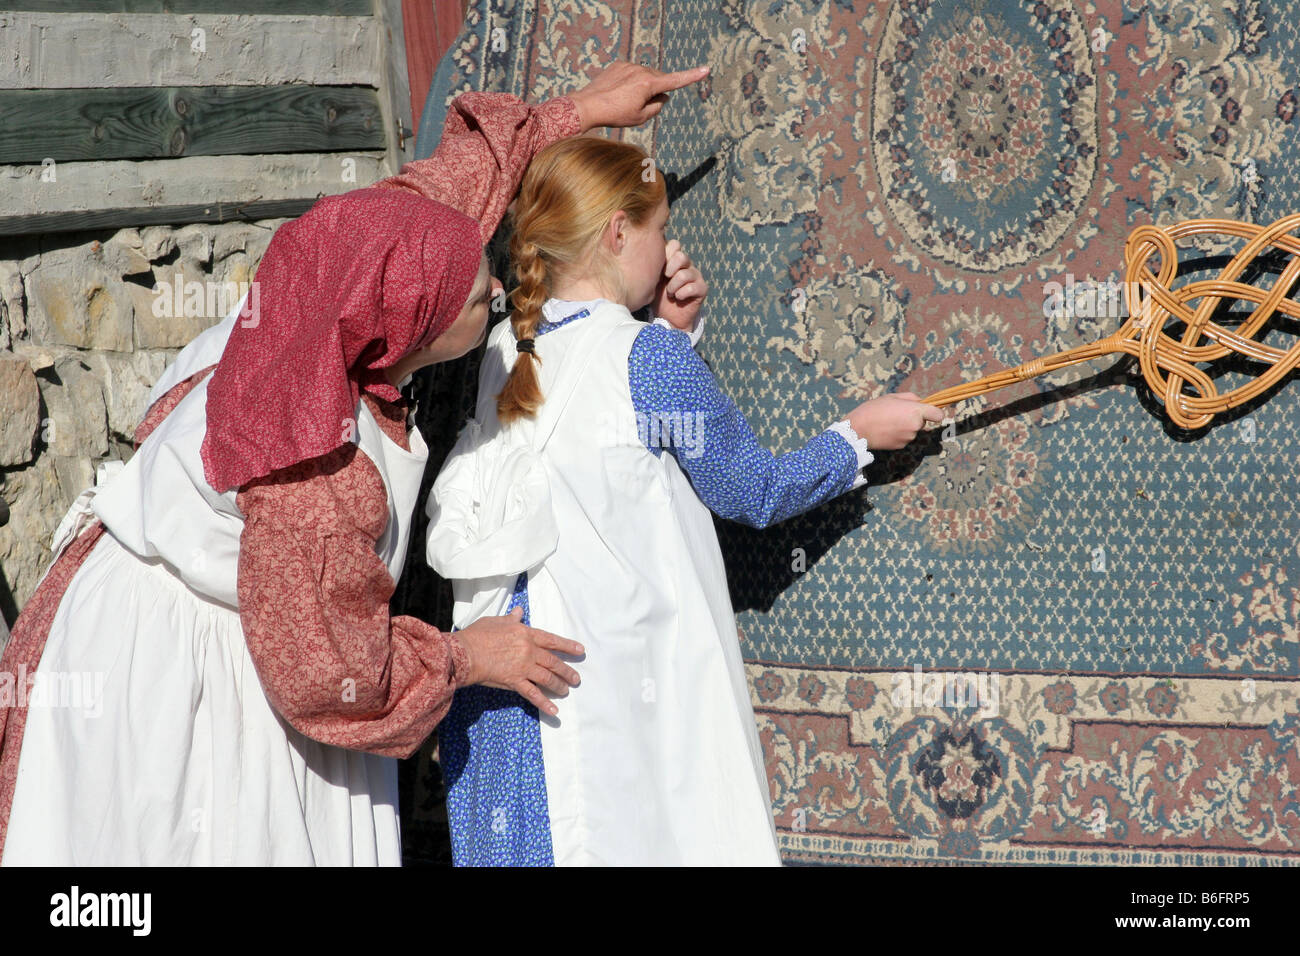 Una madre que muestra a una niña cómo vencer a una alfombra en el estilo de vida del viejo oeste y forma y la chica sujetando la nariz Foto de stock